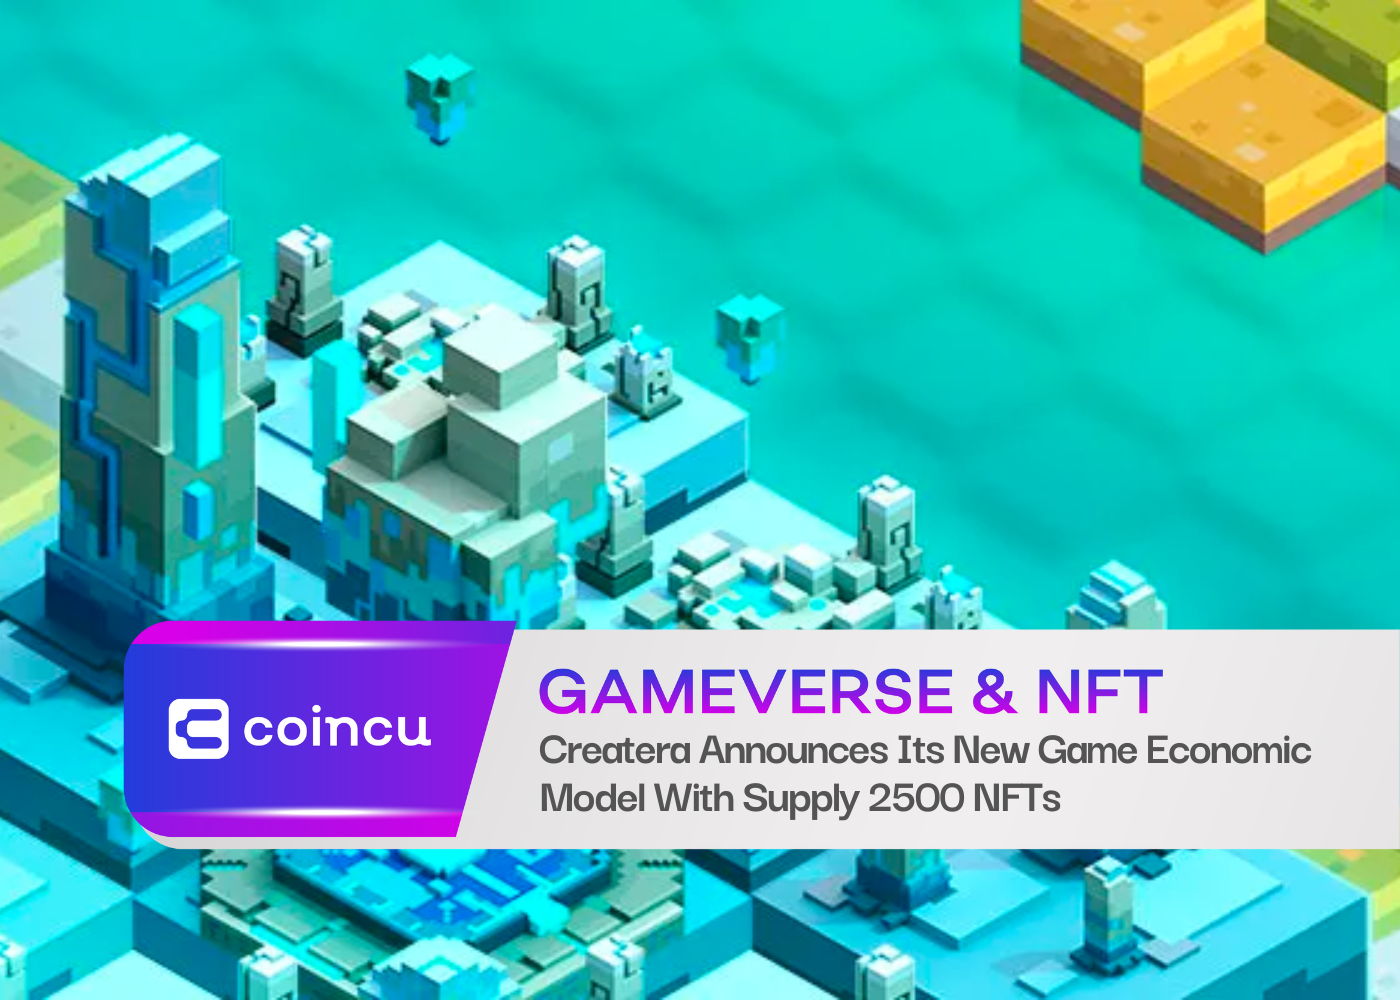 Createra kündigt sein neues Game-Wirtschaftsmodell mit der Bereitstellung von 2500 NFTs an